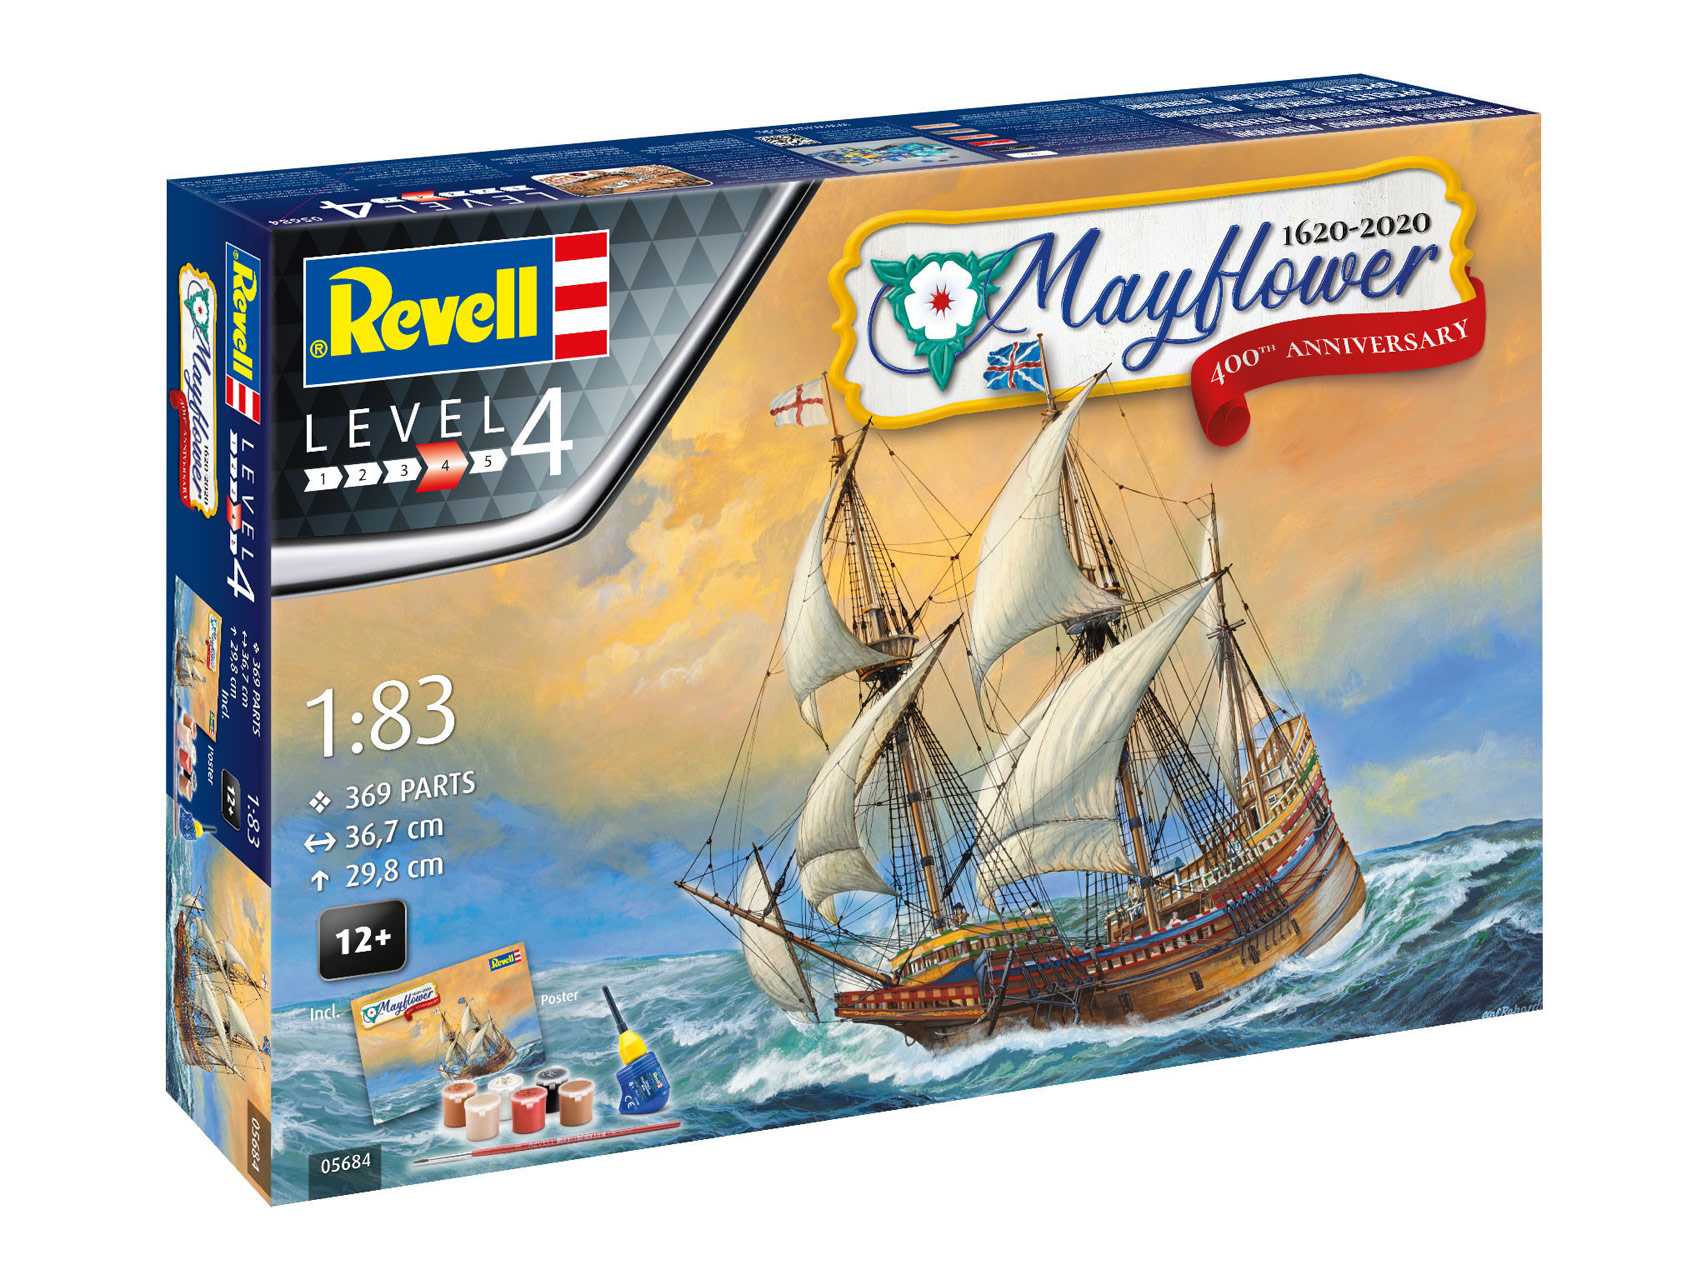 Gift-Set 05684 - Mayflower 400th Anniversary (1:83)